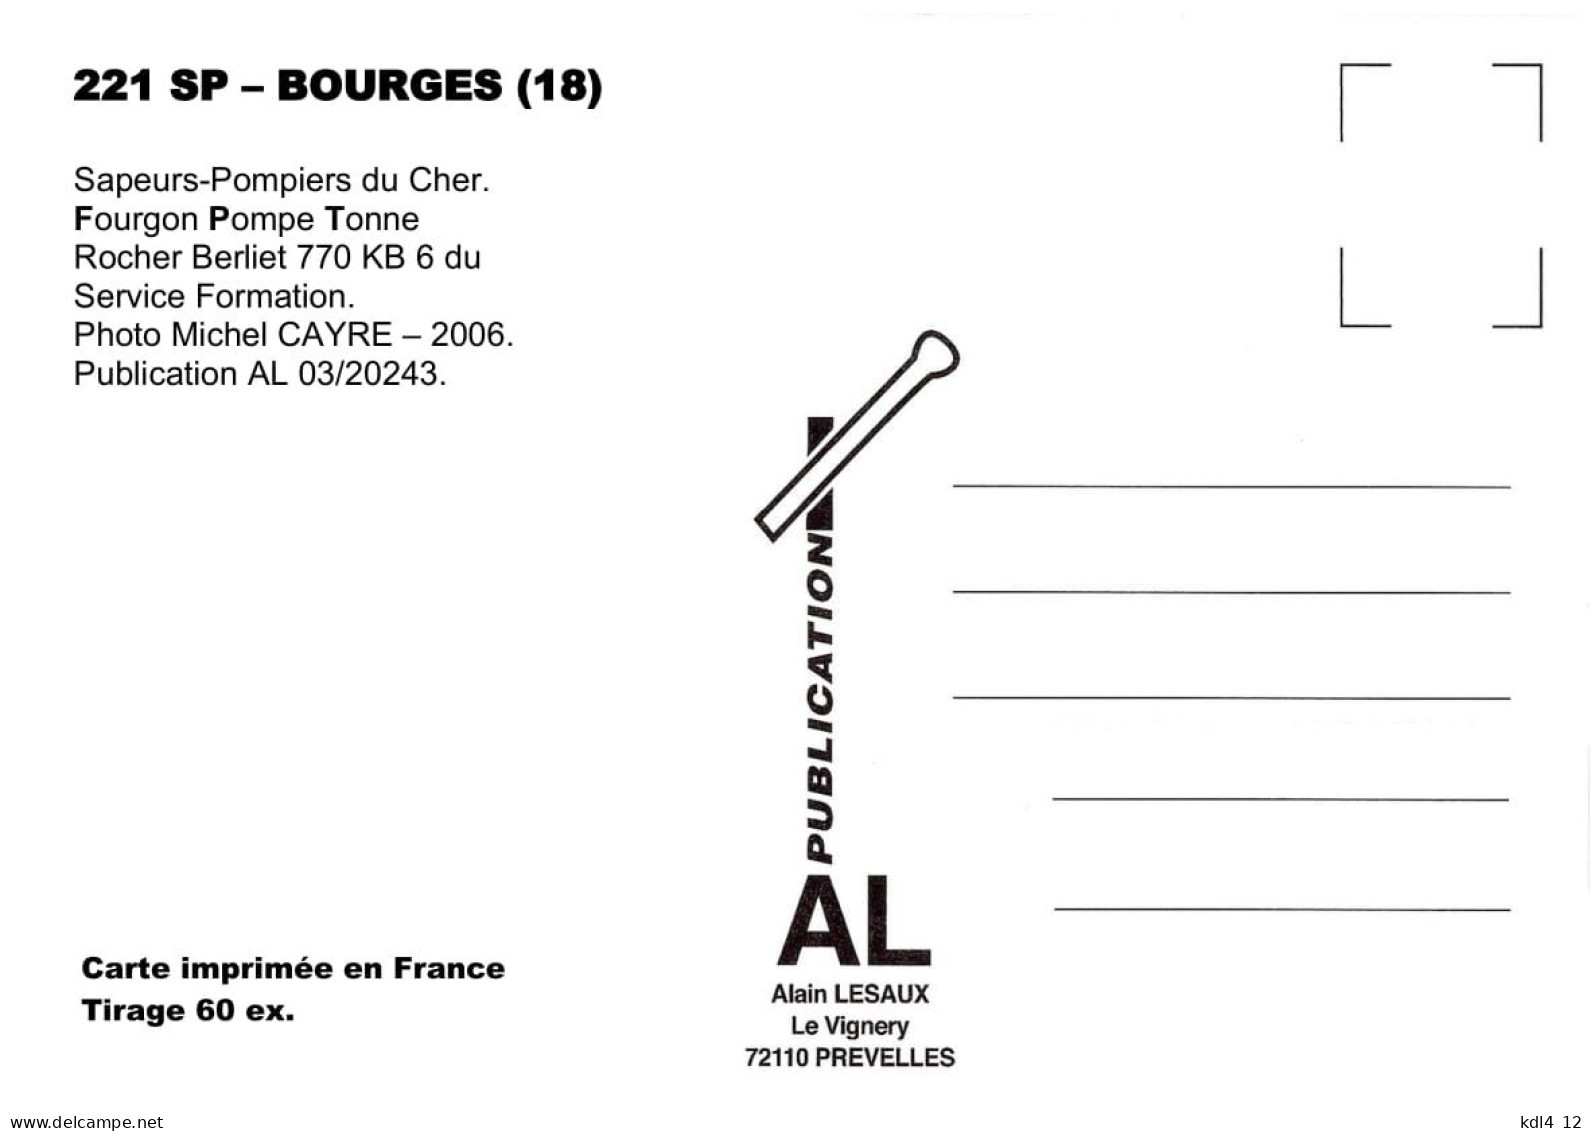 AL SP 221 - Fourgon Pompe Tonne Berliet 770 KB 6 - BOURGES - Cher - Bourges